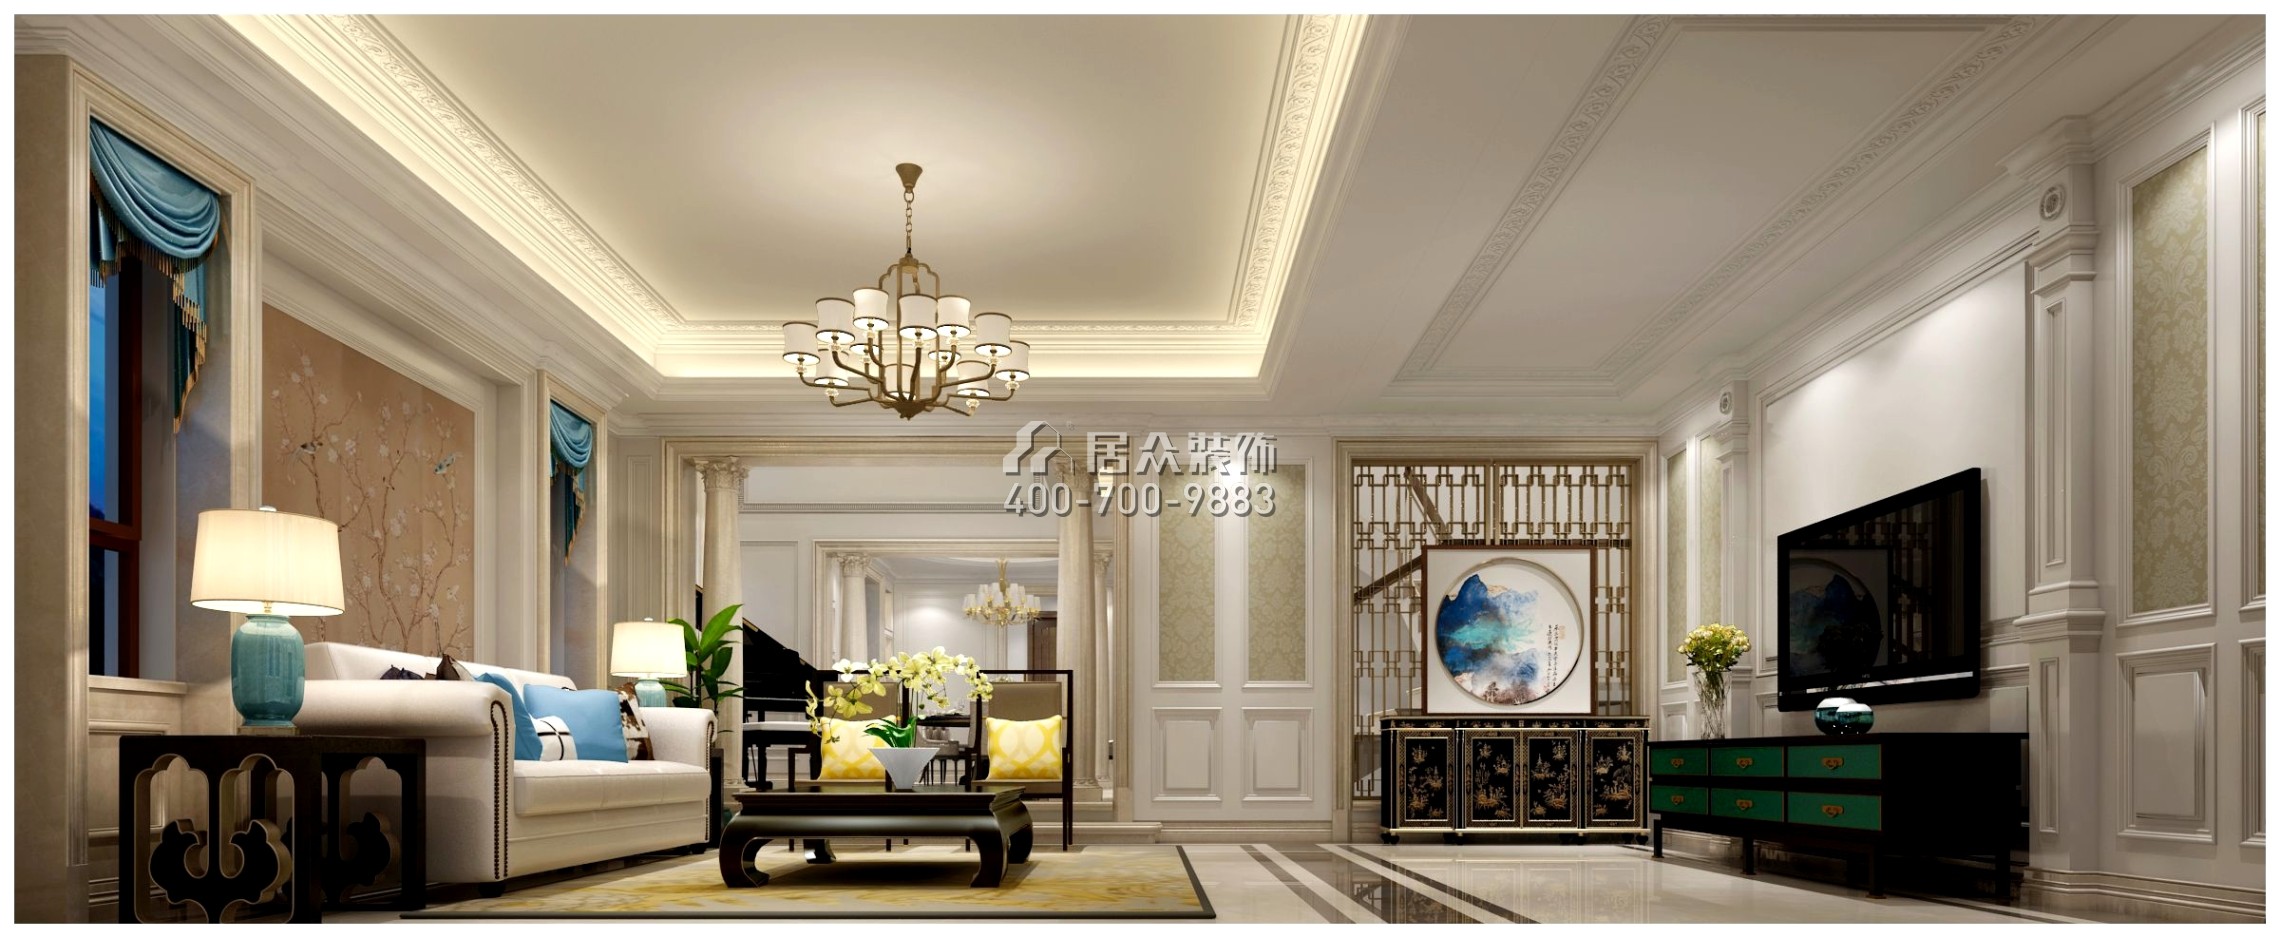 武广新城红墅湾500平方米美式风格别墅户型客厅装修效果图